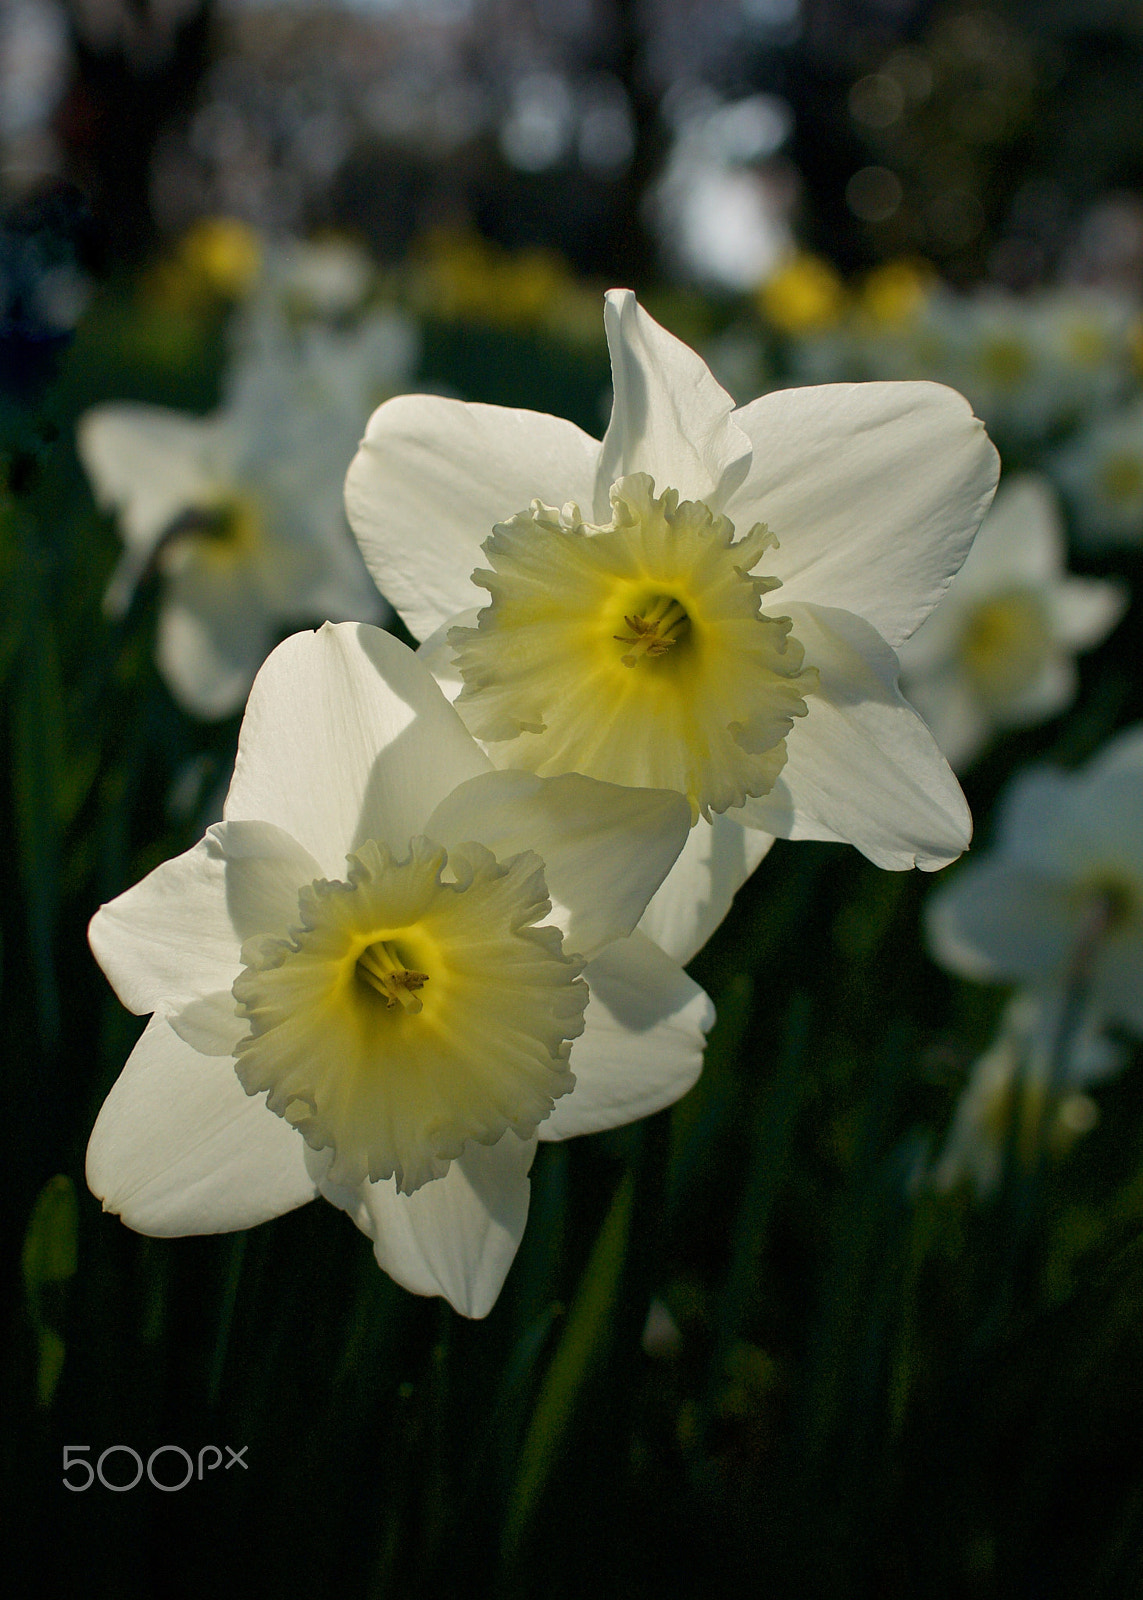 Nikon 1 J2 sample photo. Backlit daffodils photography